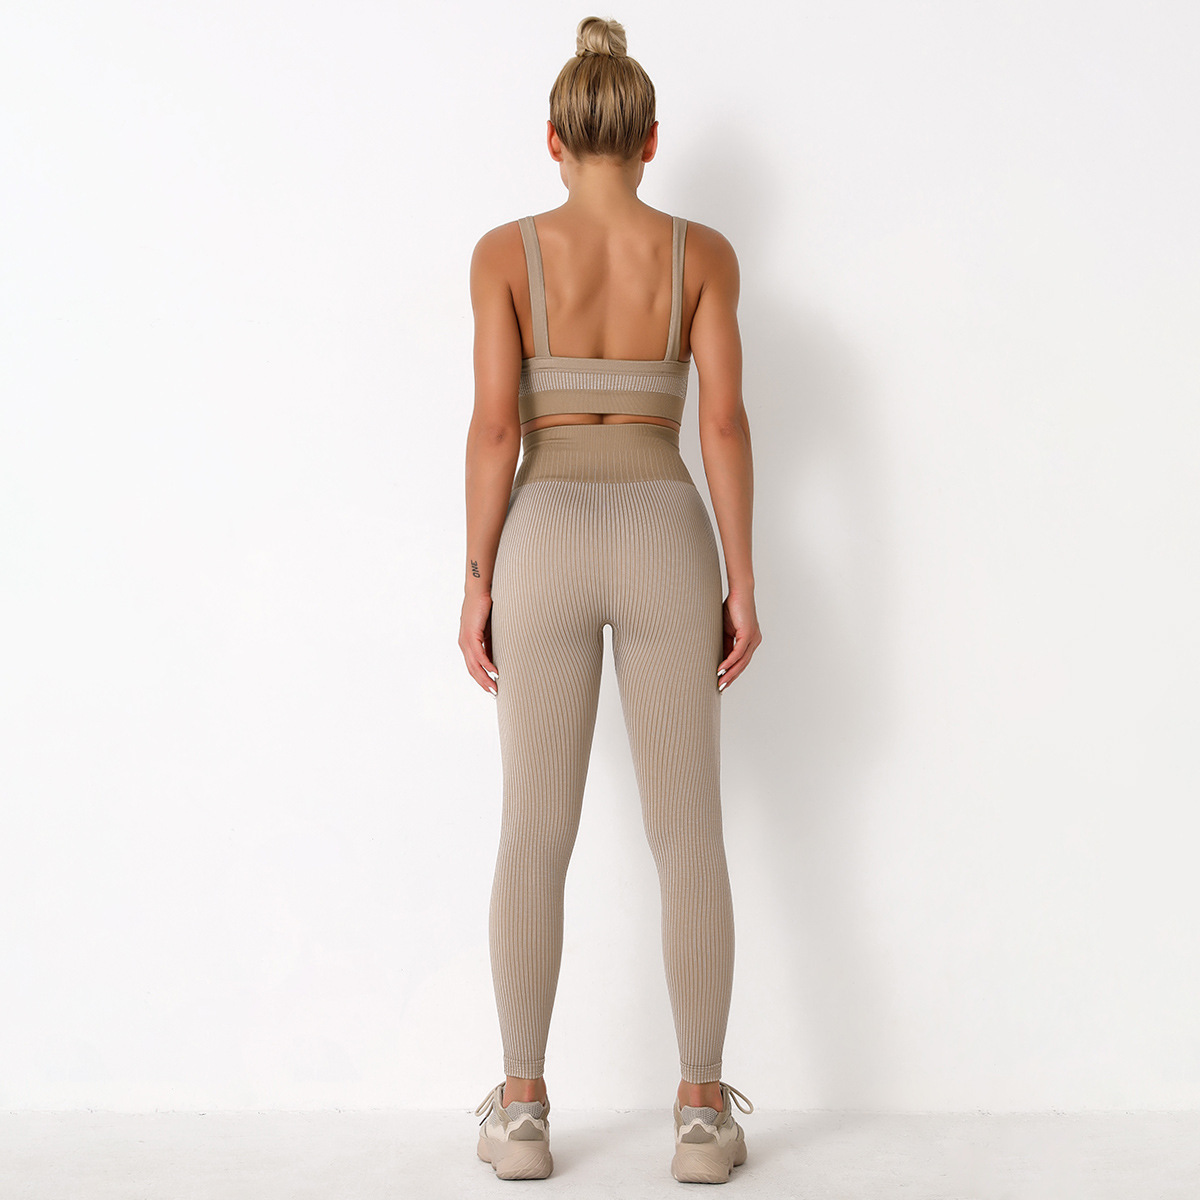 wholesale vendedor de ropa Nihaostyles a rayas a prueba de golpes belleza espalda sujetador pantalones yoga conjunto de deportes NSLX67219